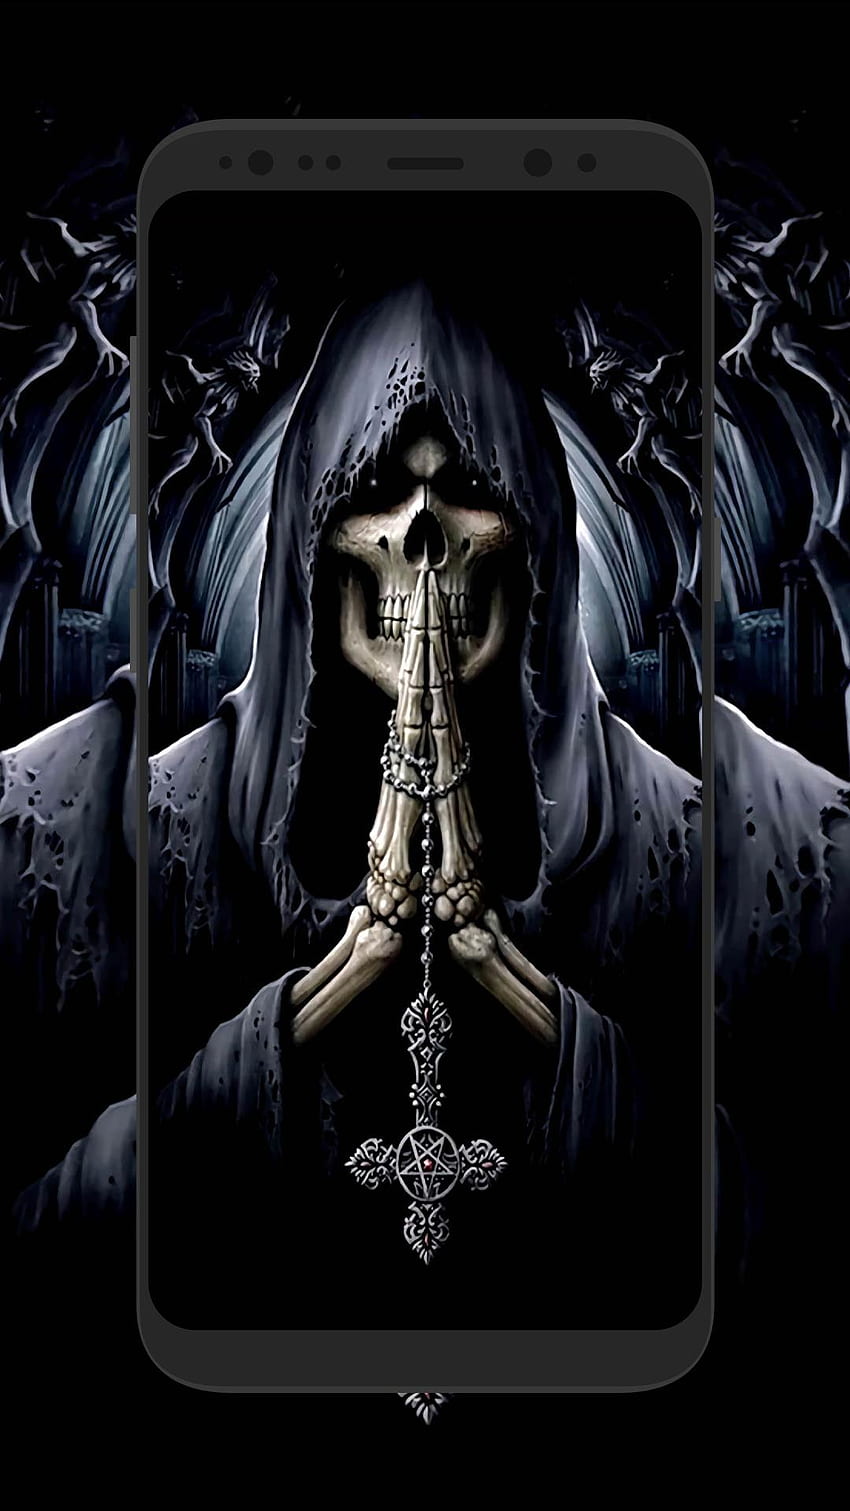 Full Grim Reaper - - - Tip, Cool Reaper HD phone wallpaper | Pxfuel